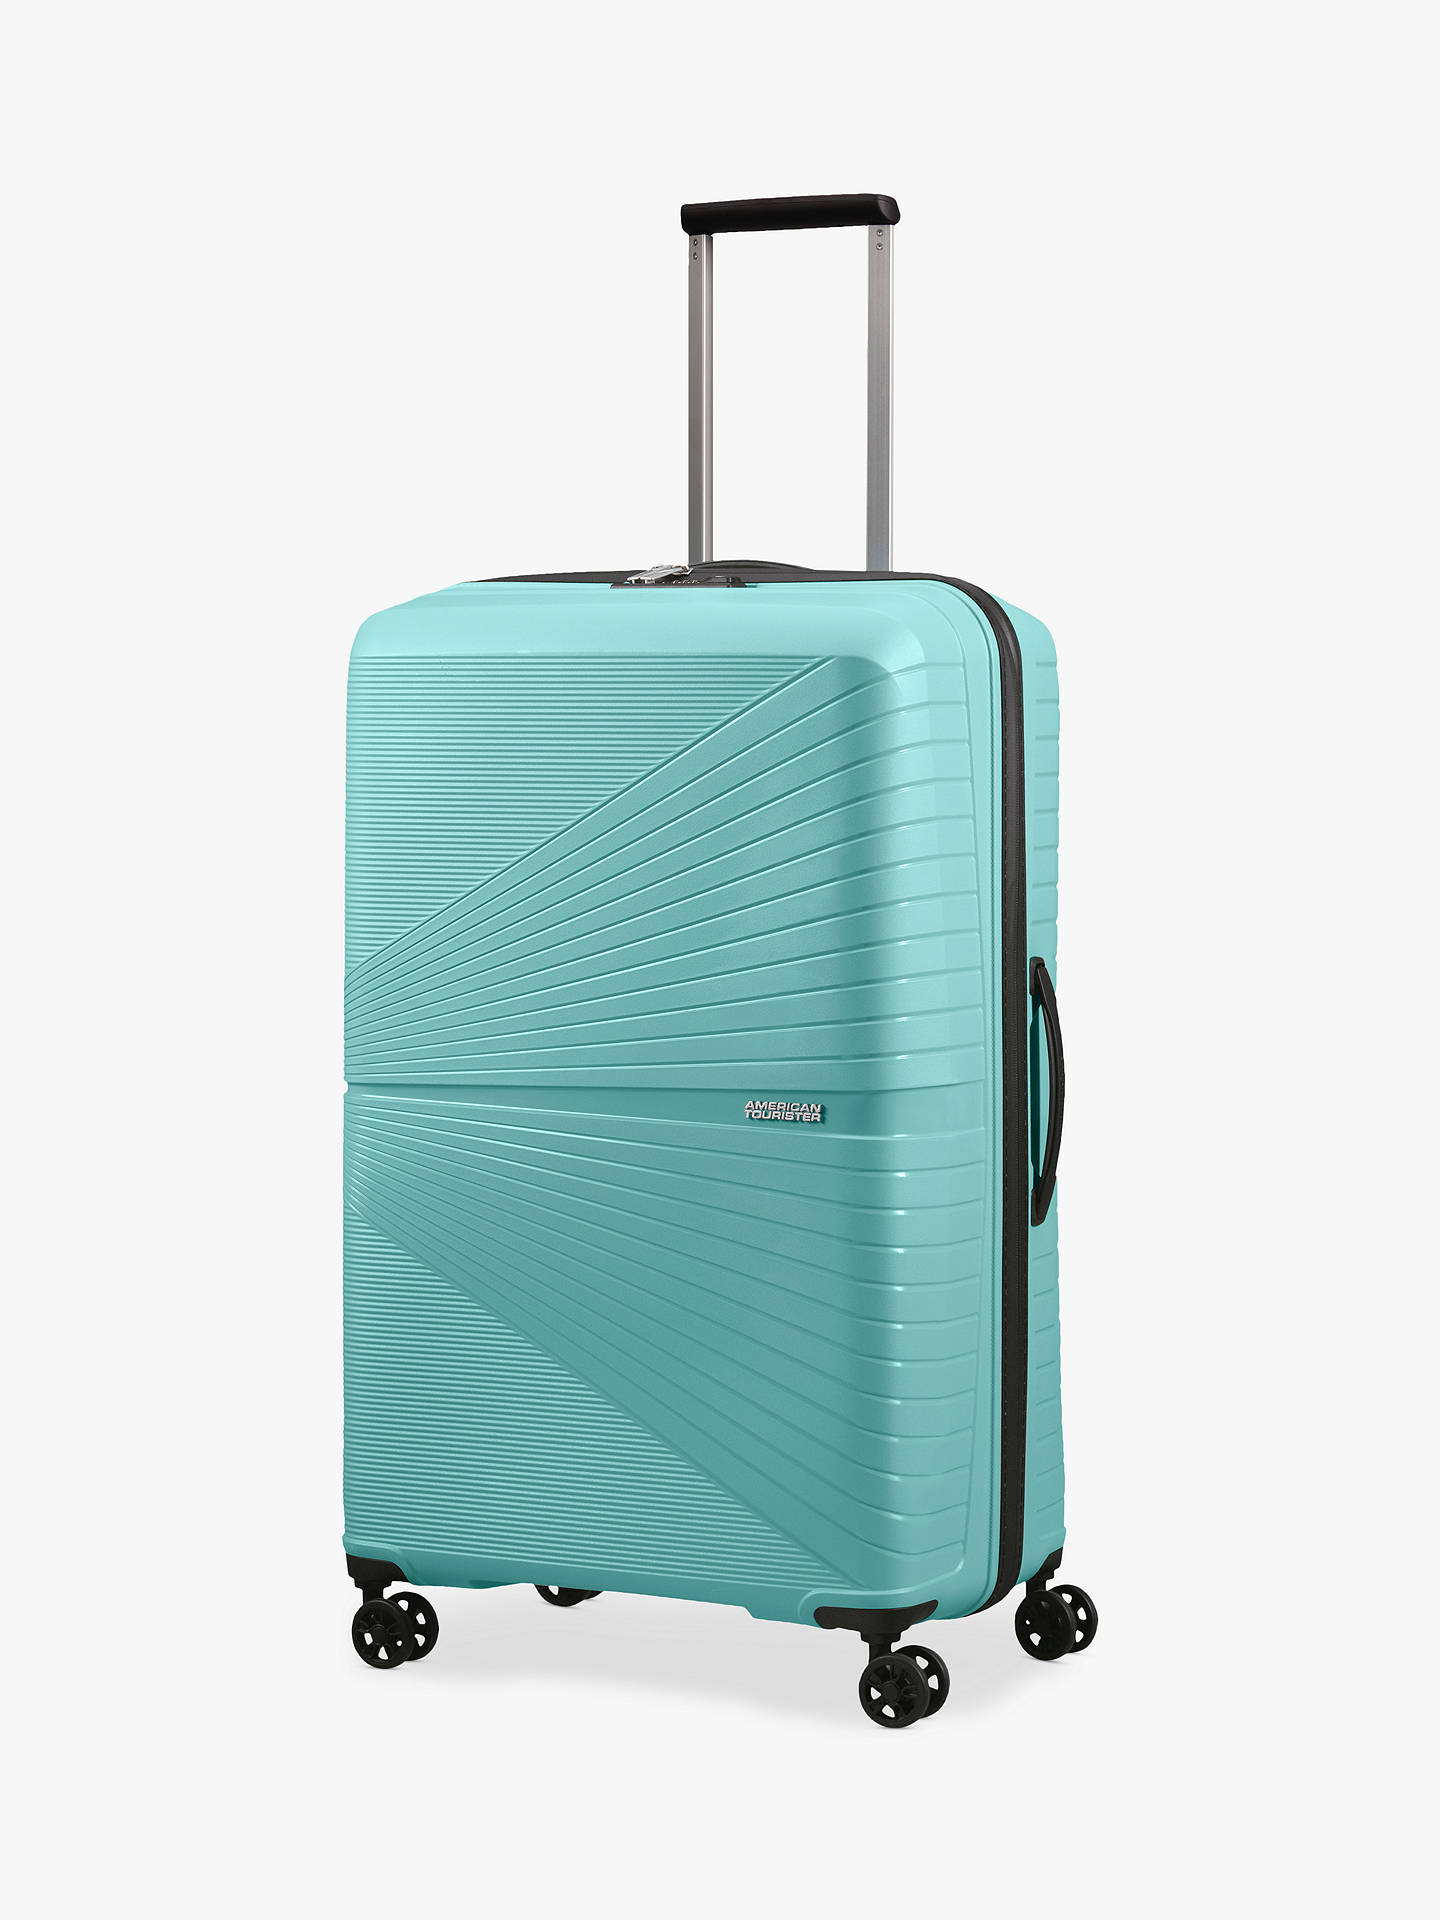 blue travel case luggage